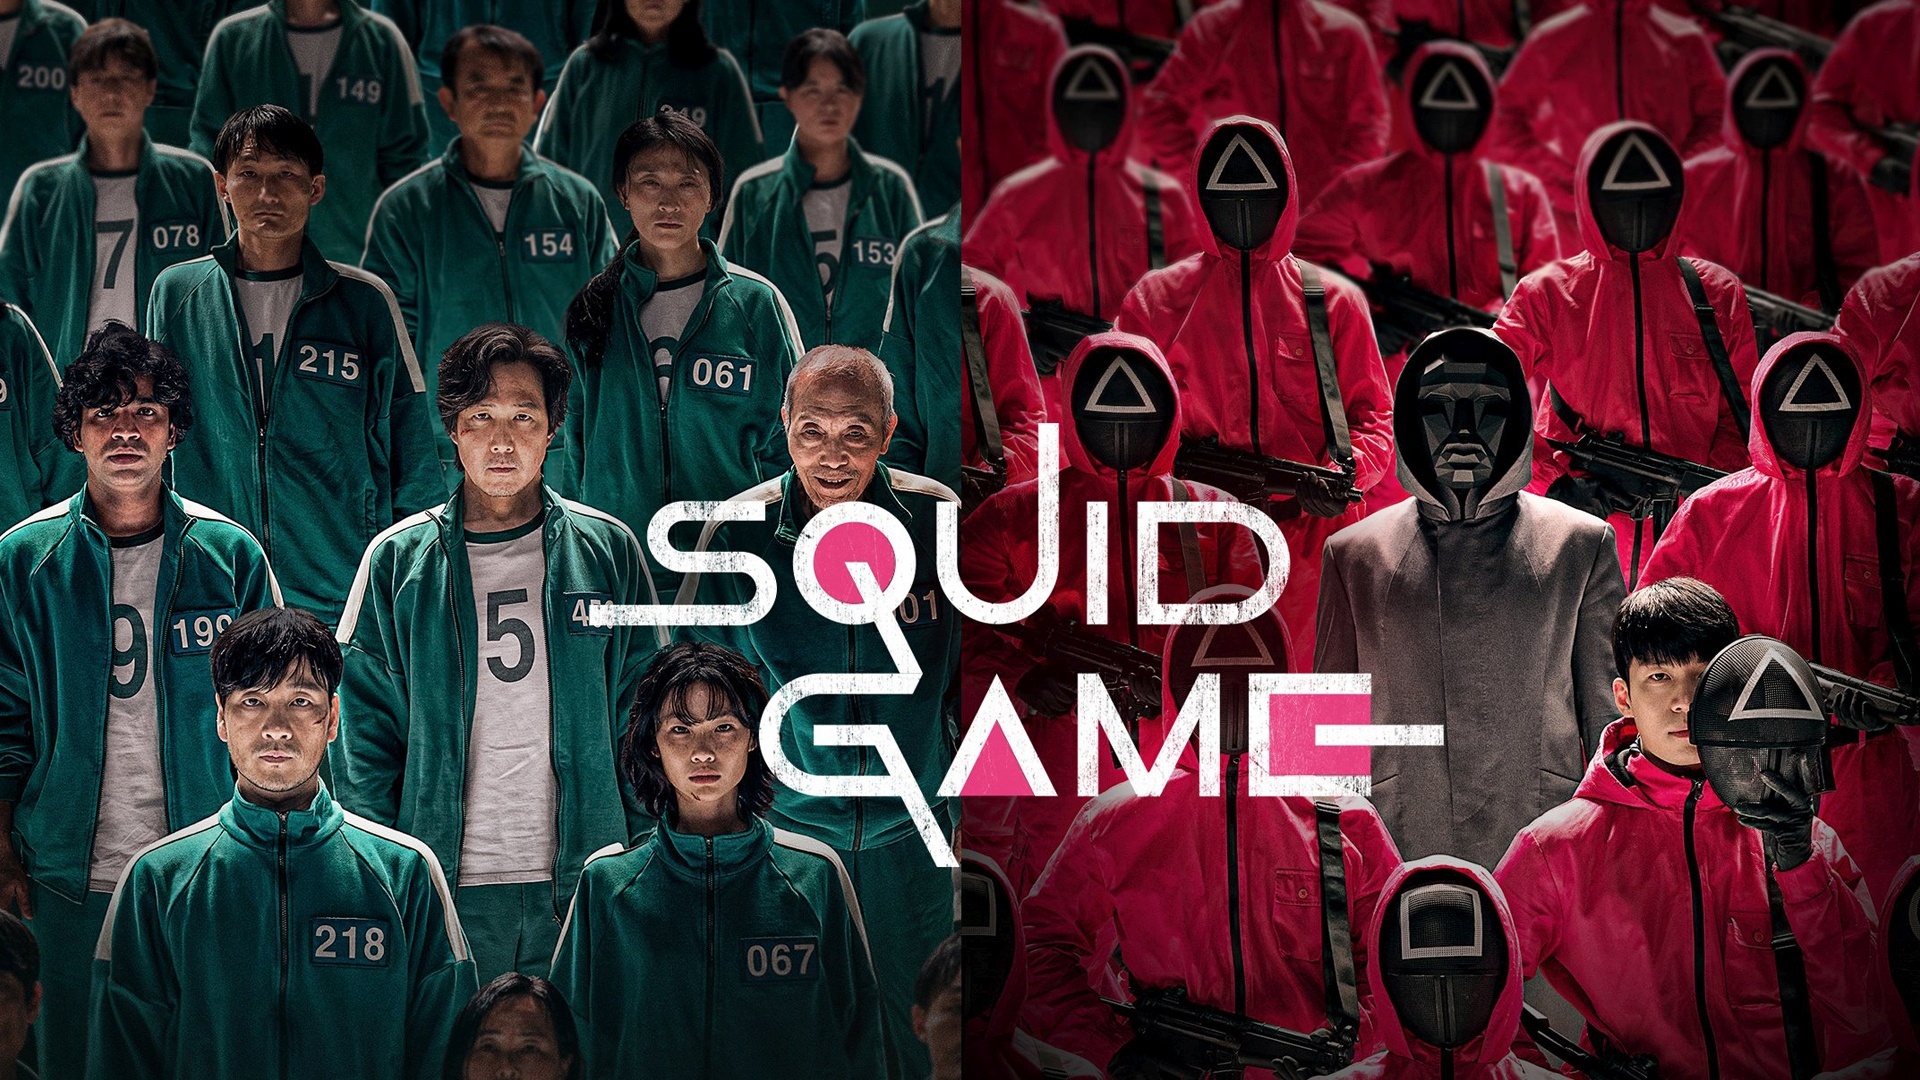 نقد سریال Squid Game – نمایش بدون سانسور خشم